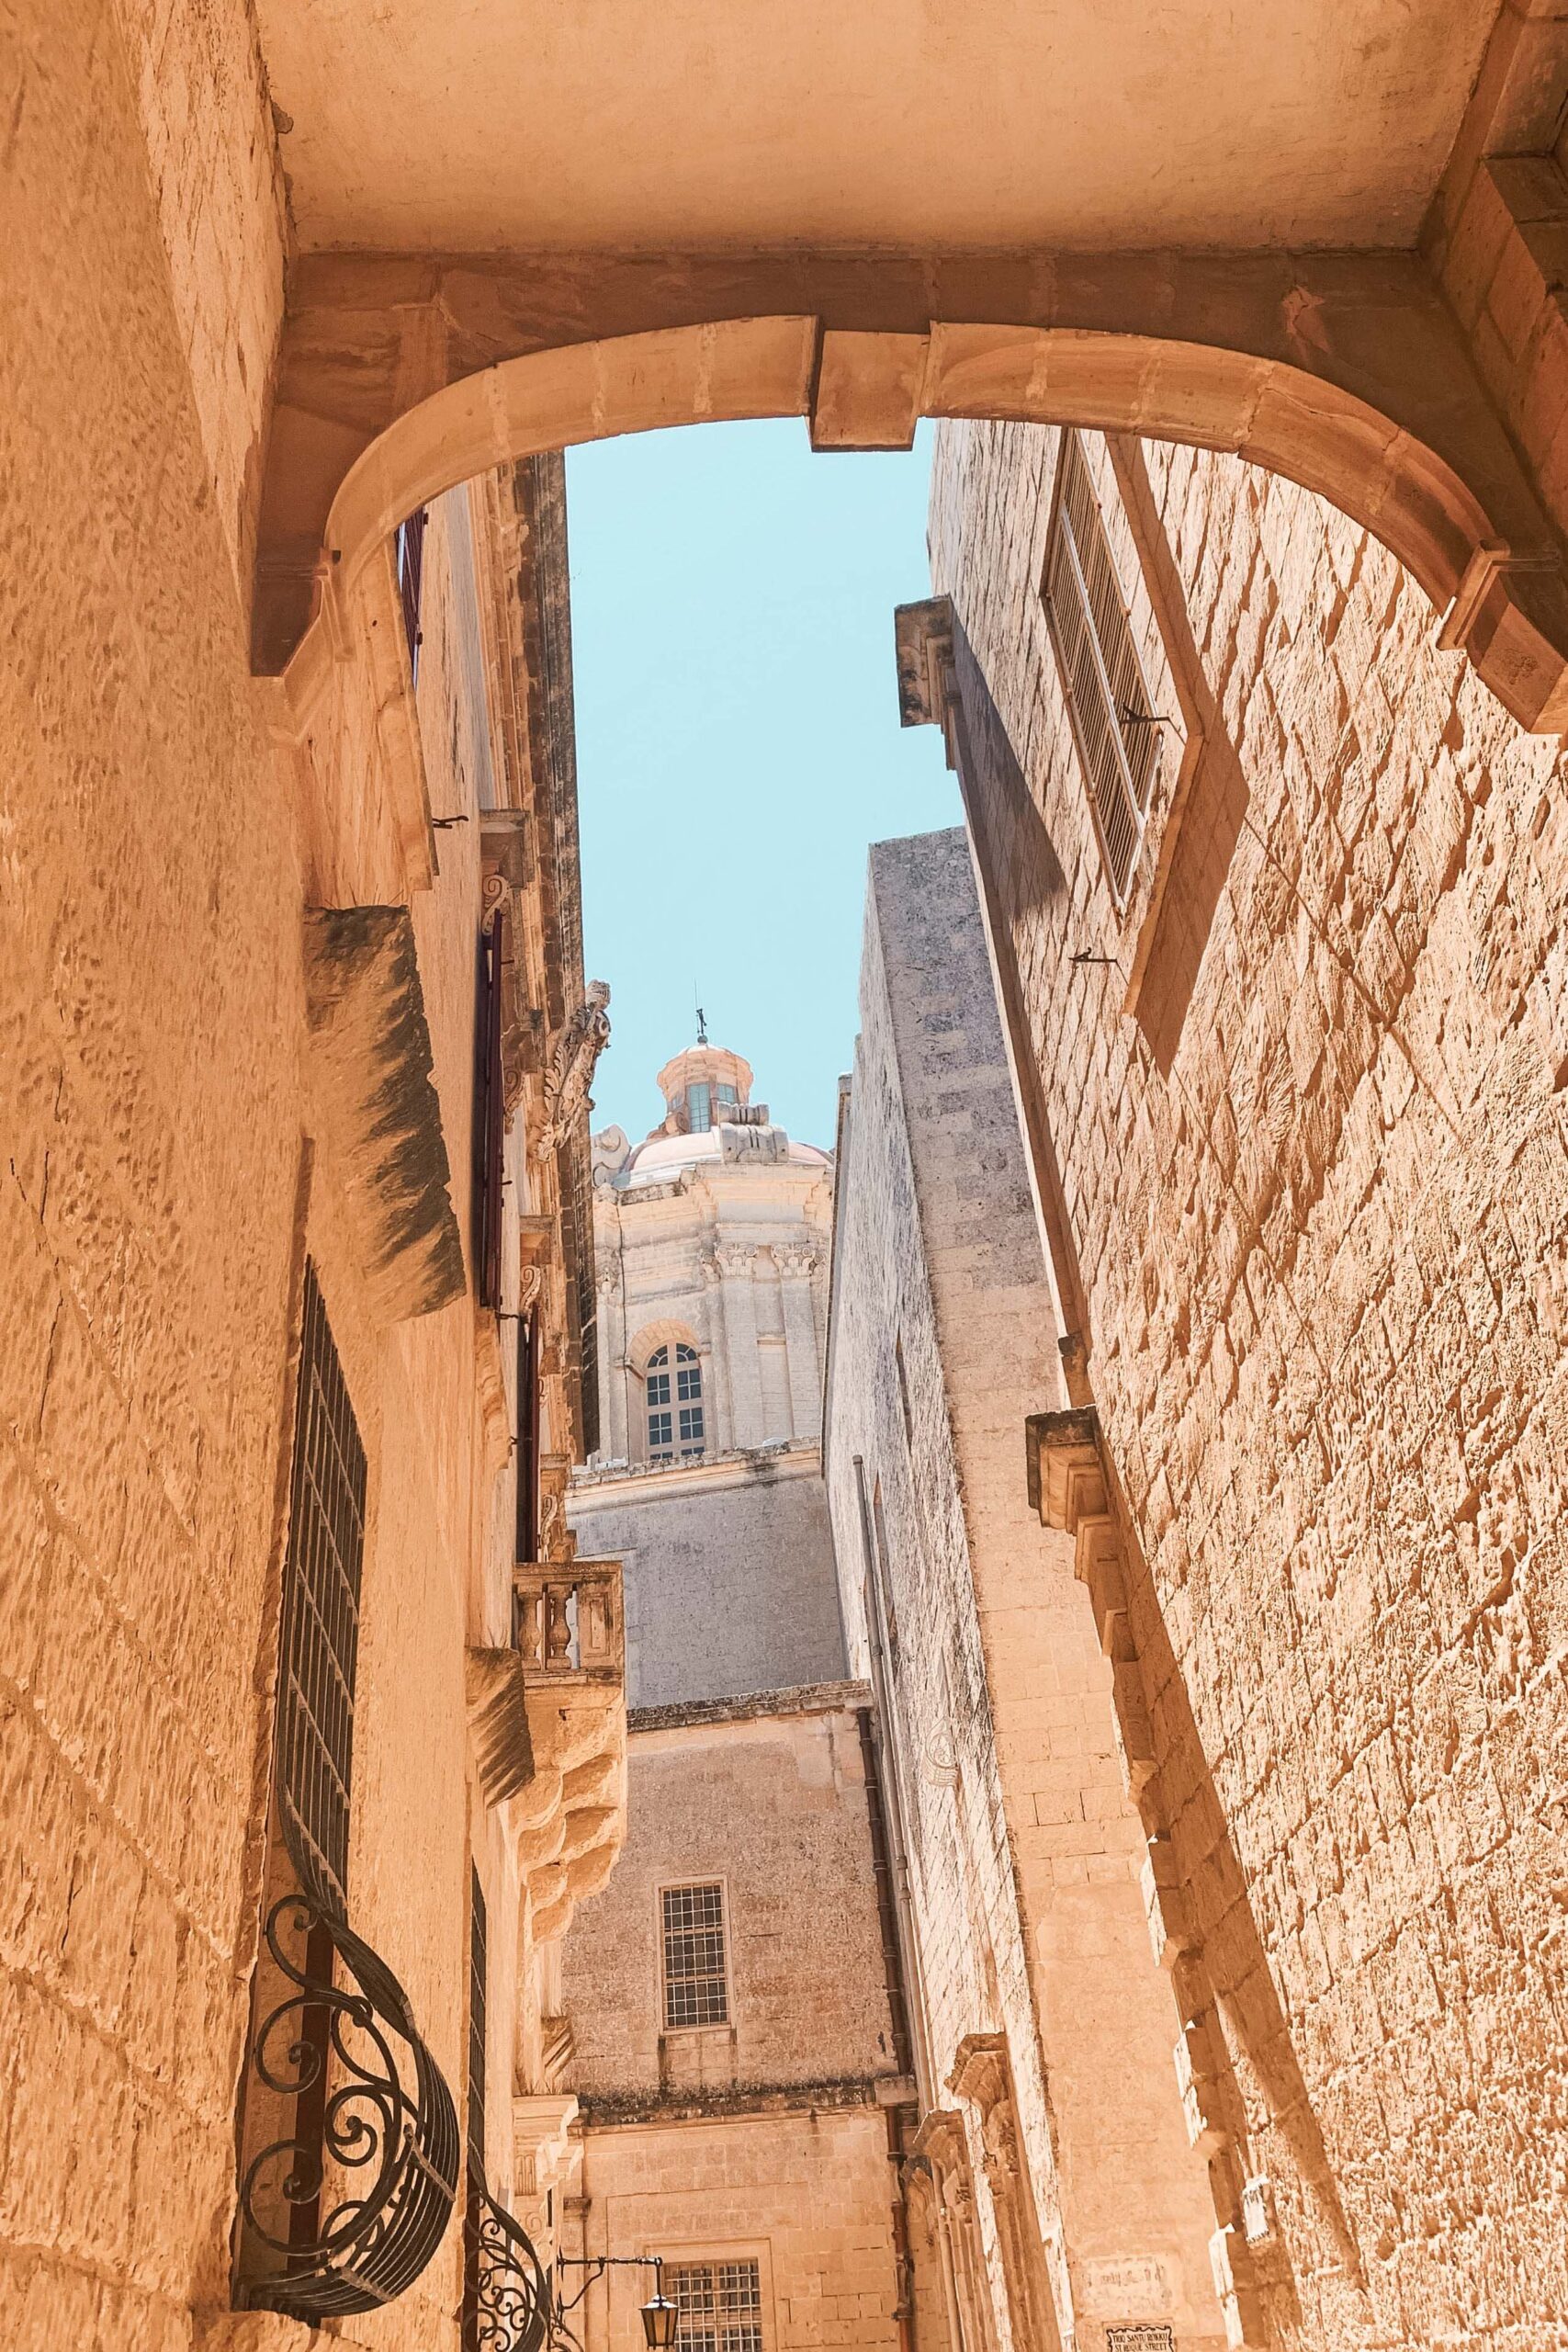 Narrow Saint Roque street (Triq Santu Rokku) in the old town of Mdina, Malta